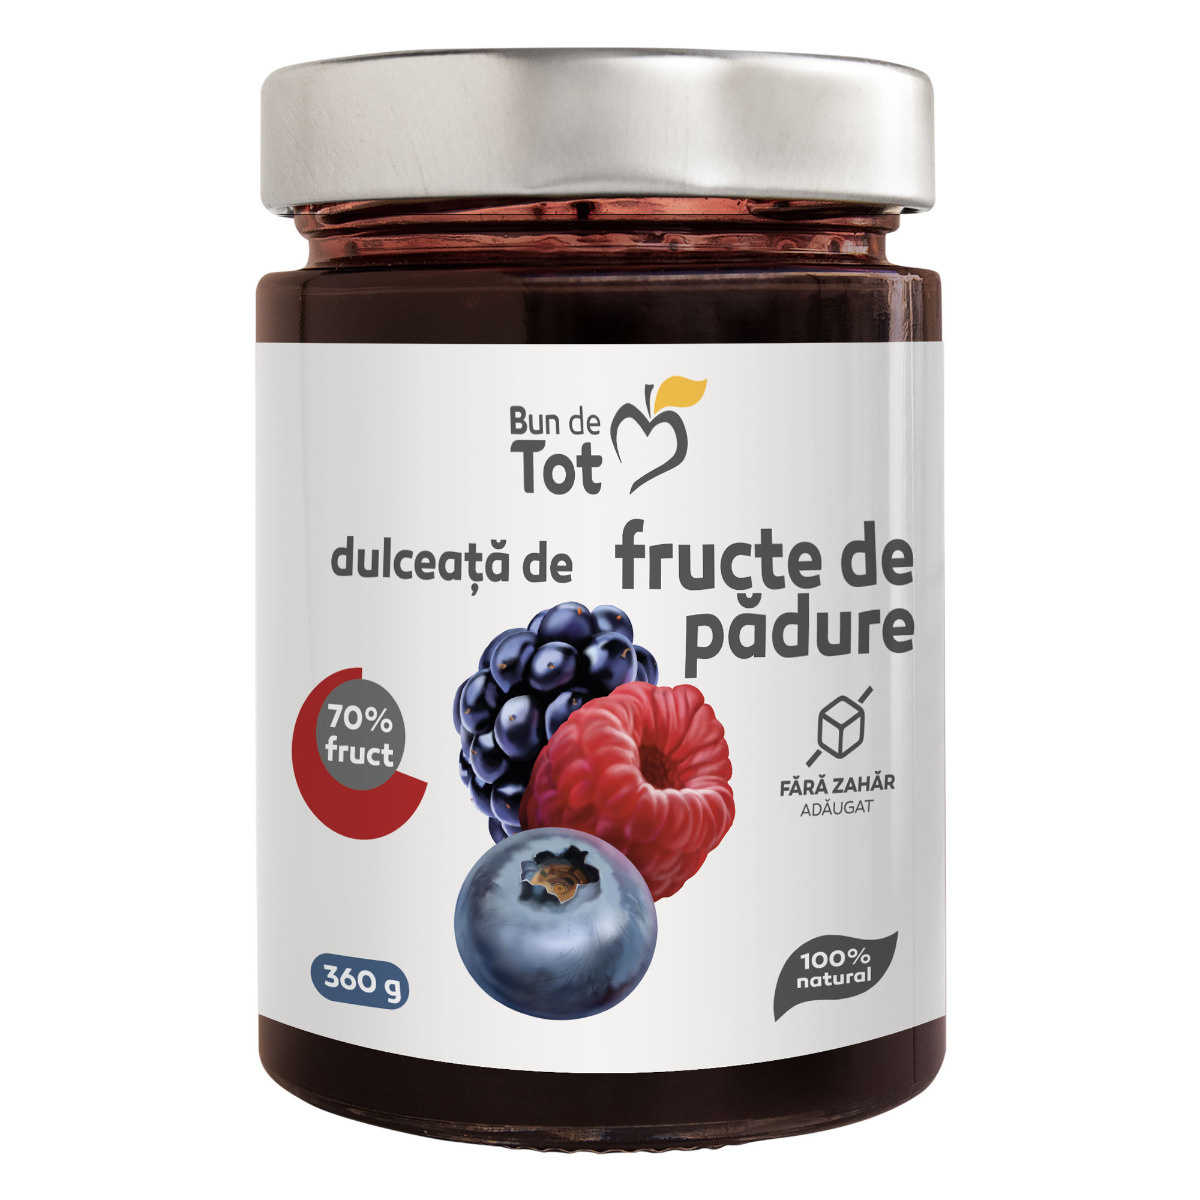 Bun de Tot Fructe de Padure dulceata fara zahar – 360g BUN DE TOT